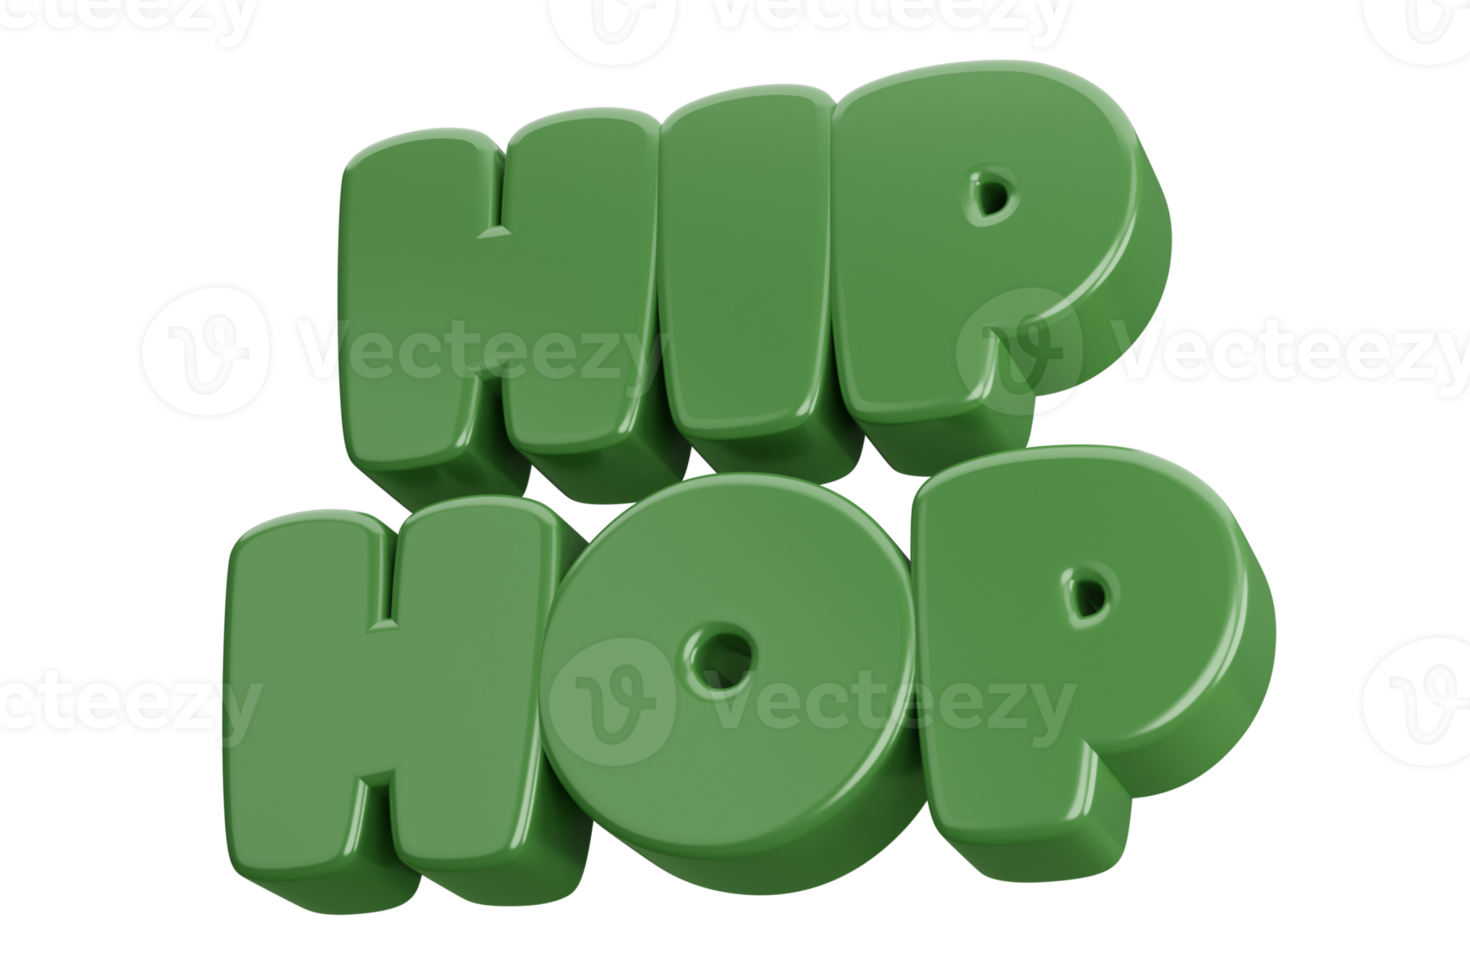 heup hop 3d woord tekst png